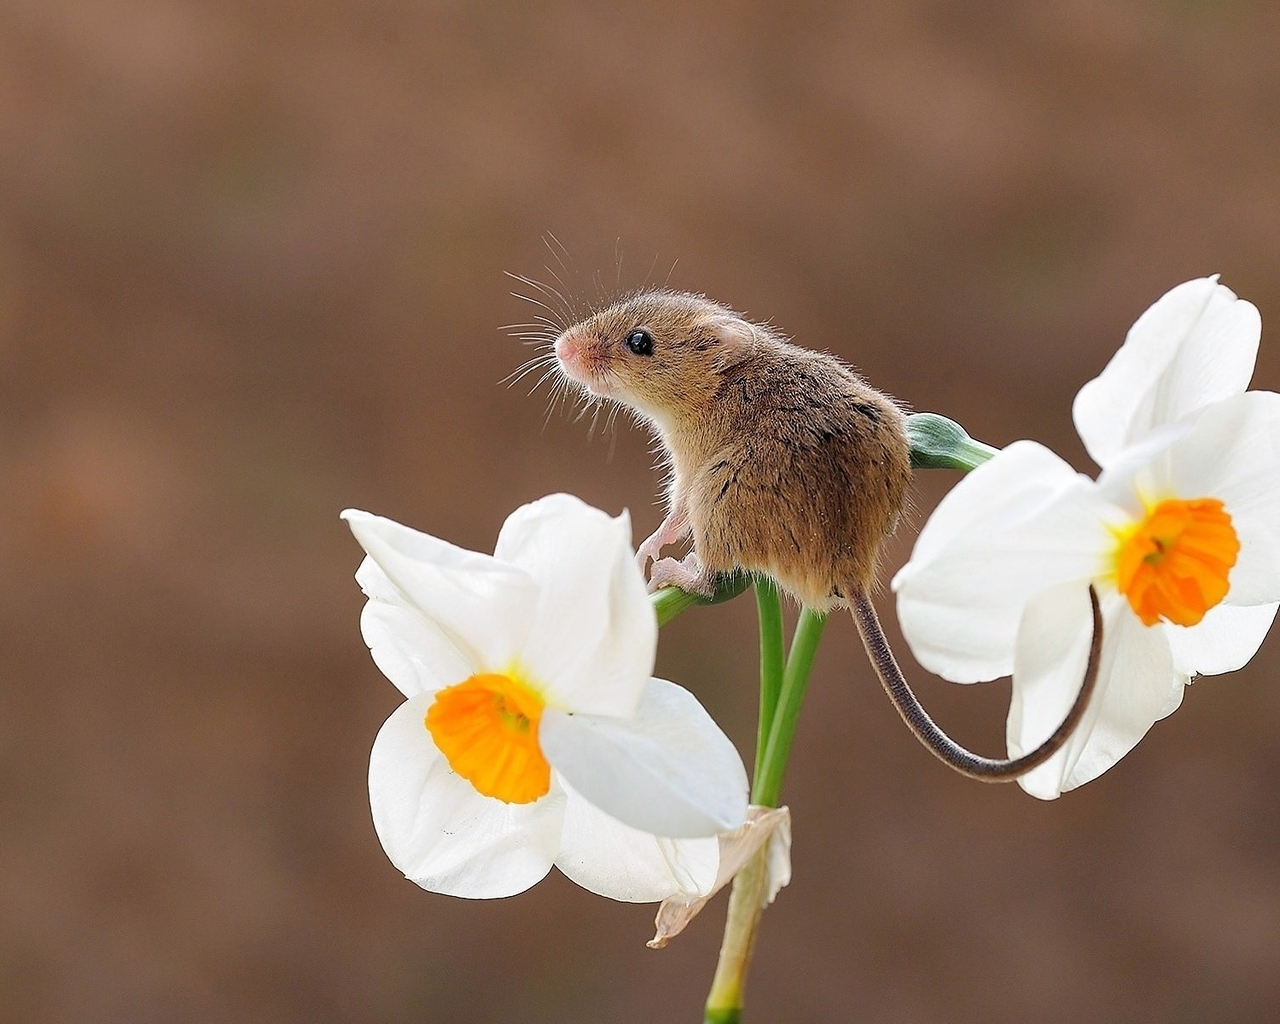 Картинка: Мышь, малютка, серая, сидит, цветок, нарцисс